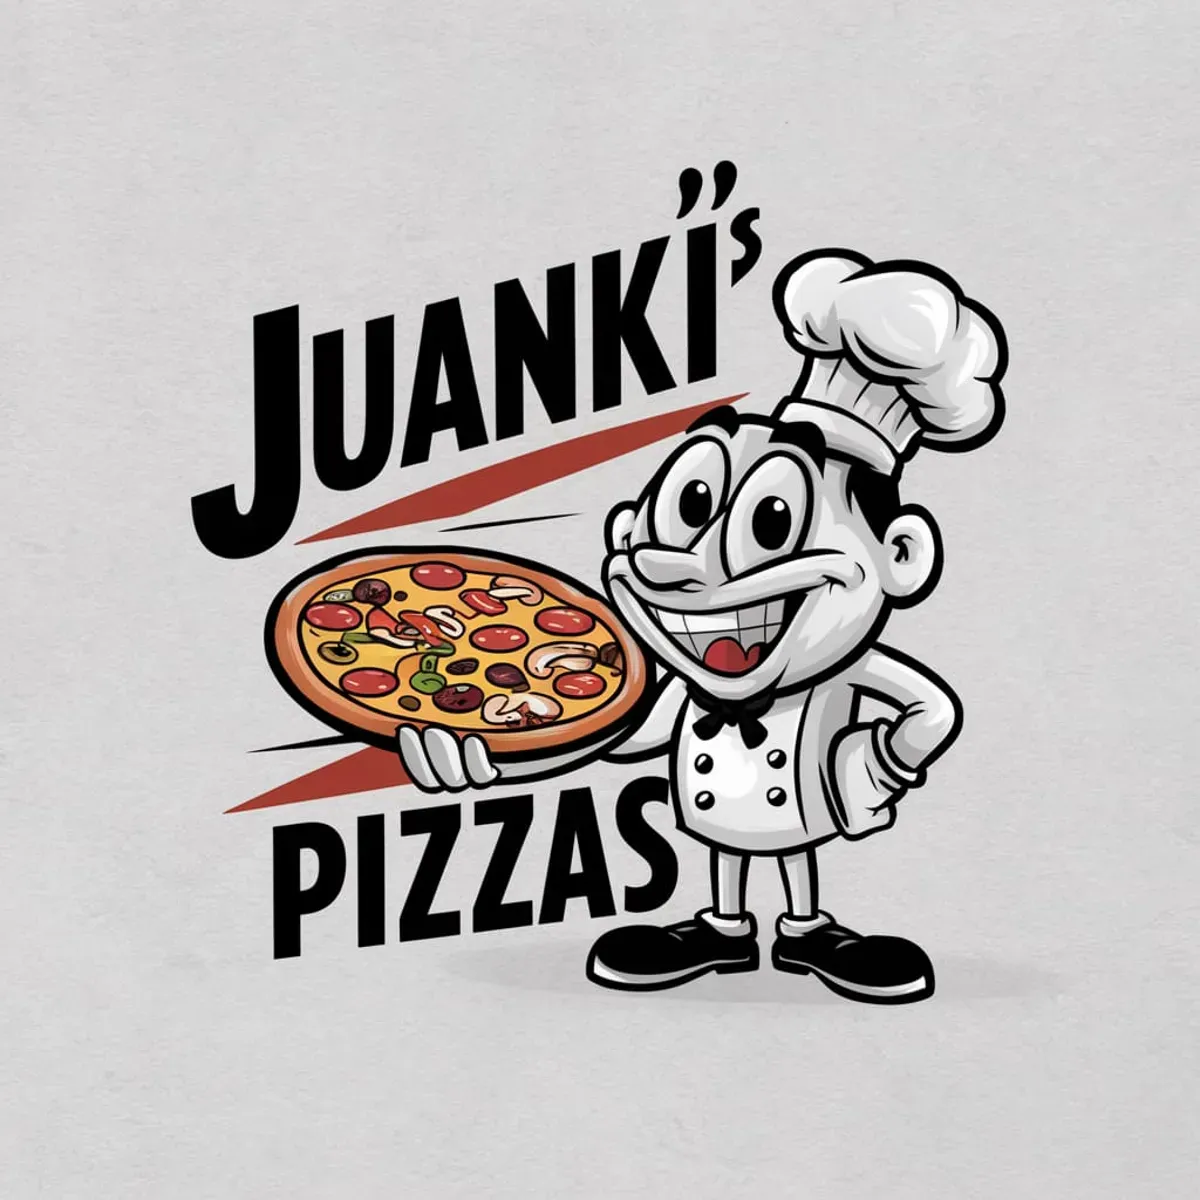 Juanki's Pizza's